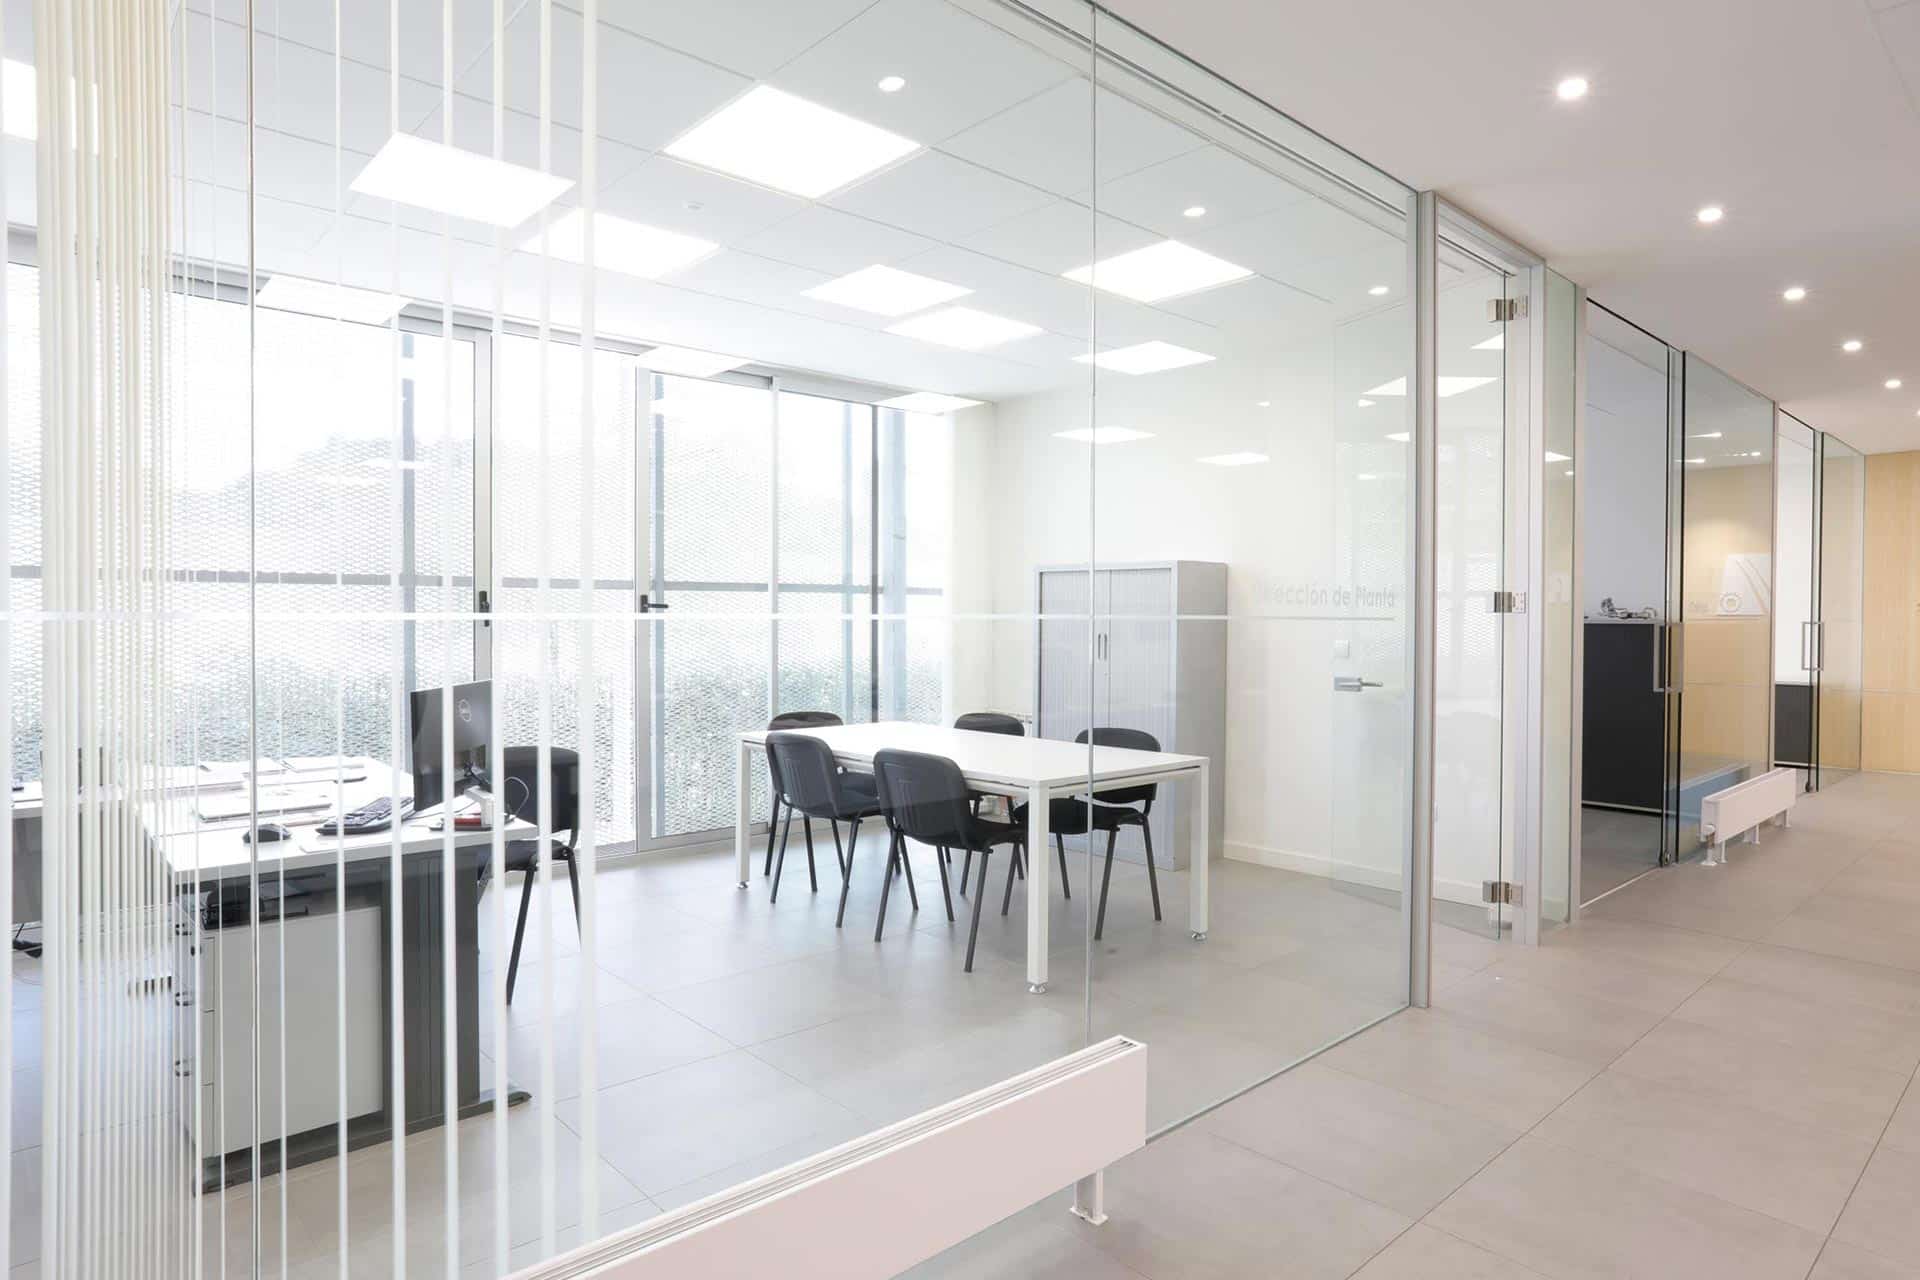 Despachos modernos en reforma de oficina de diseño diseñada por Moah Diseñador de interiores en Cantabria